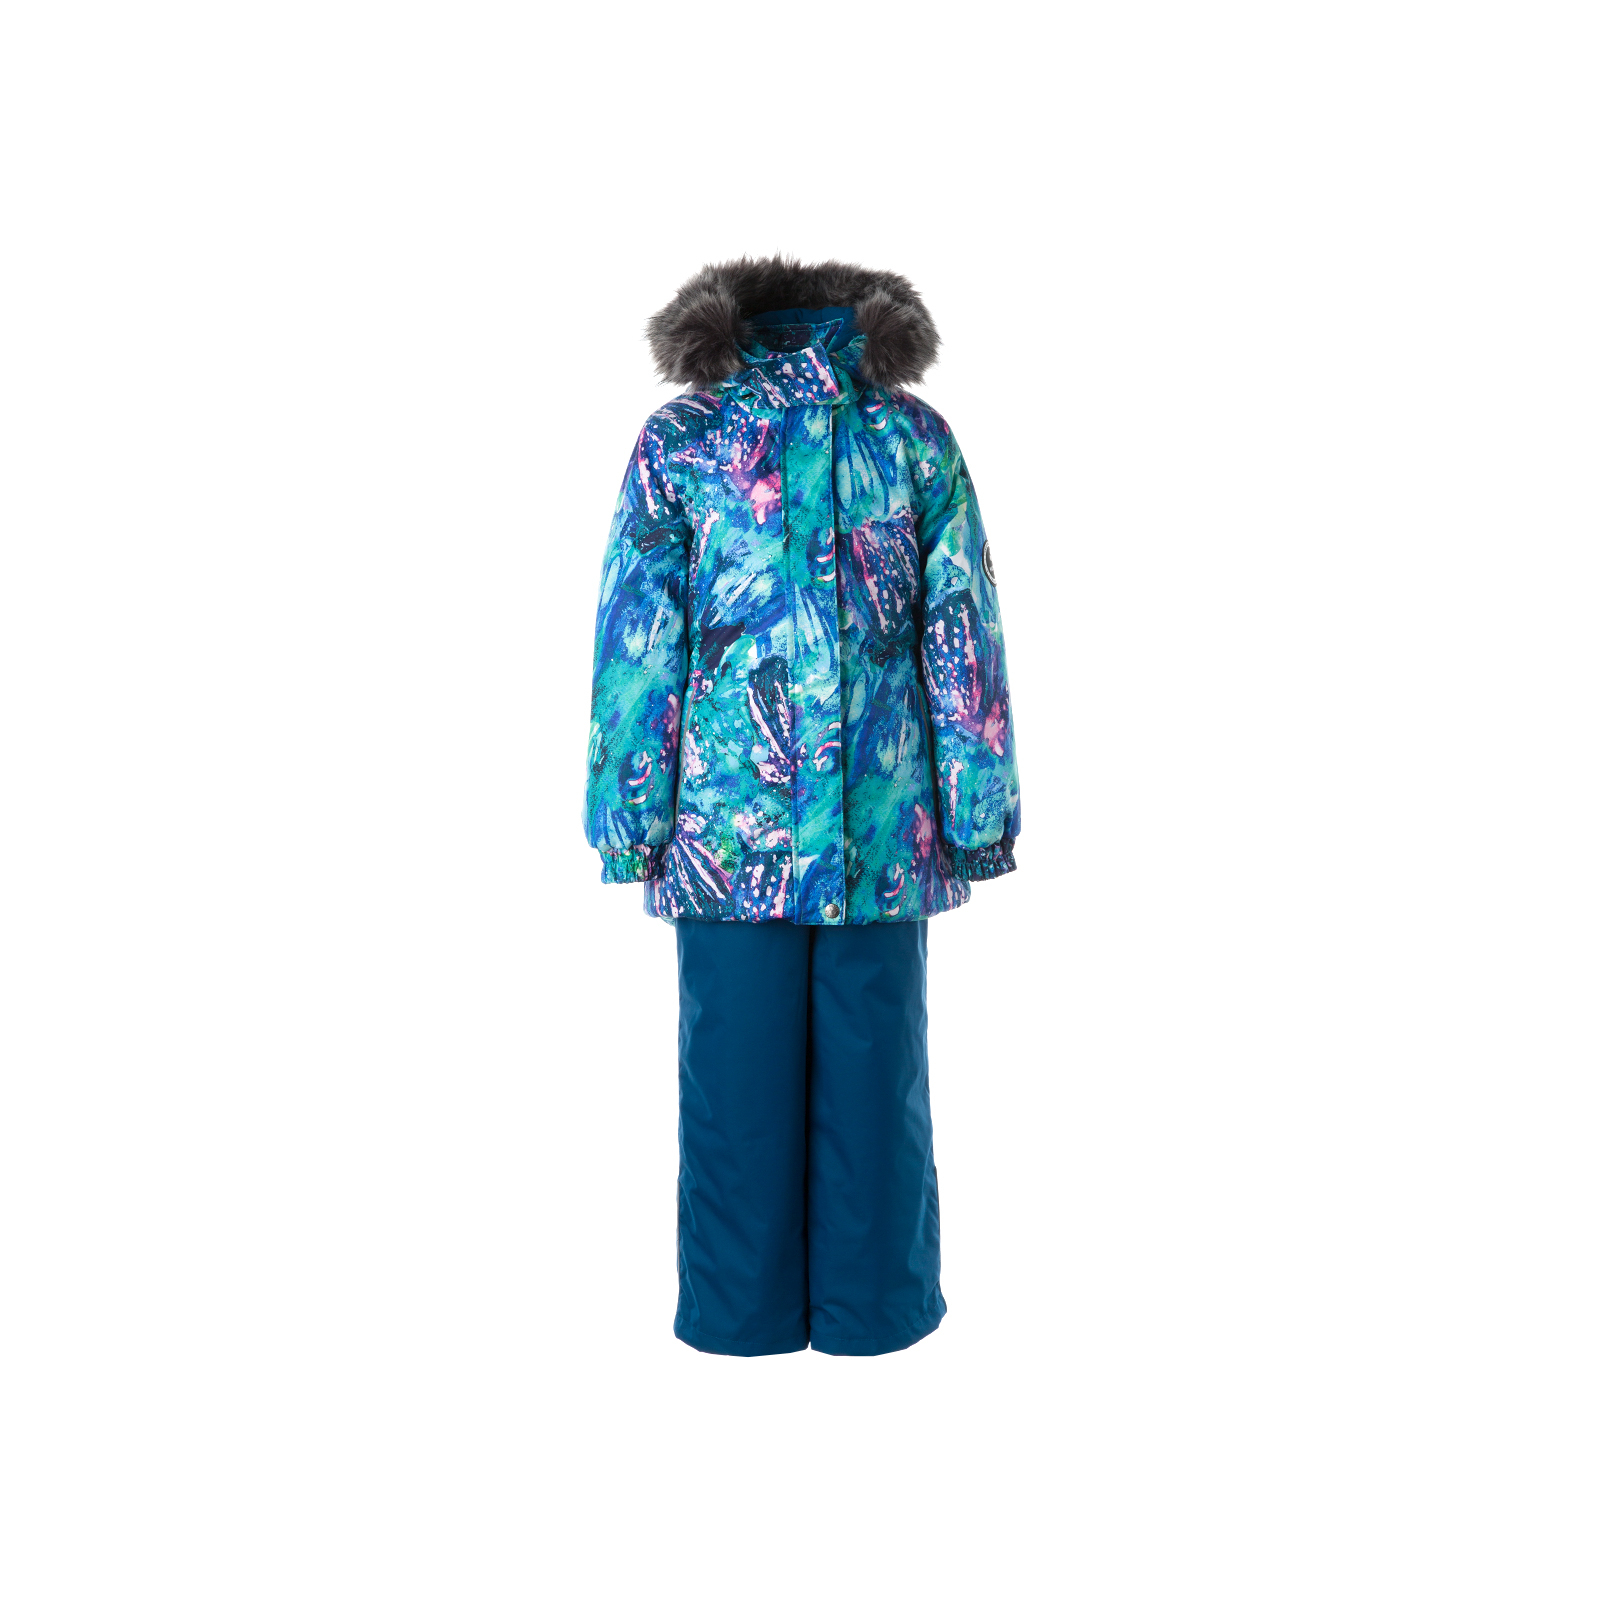 Комплект верхней одежды Huppa RENELY 1 41850130 голубой с принтом/бирюзово-зелёный 122 (4741468979991)